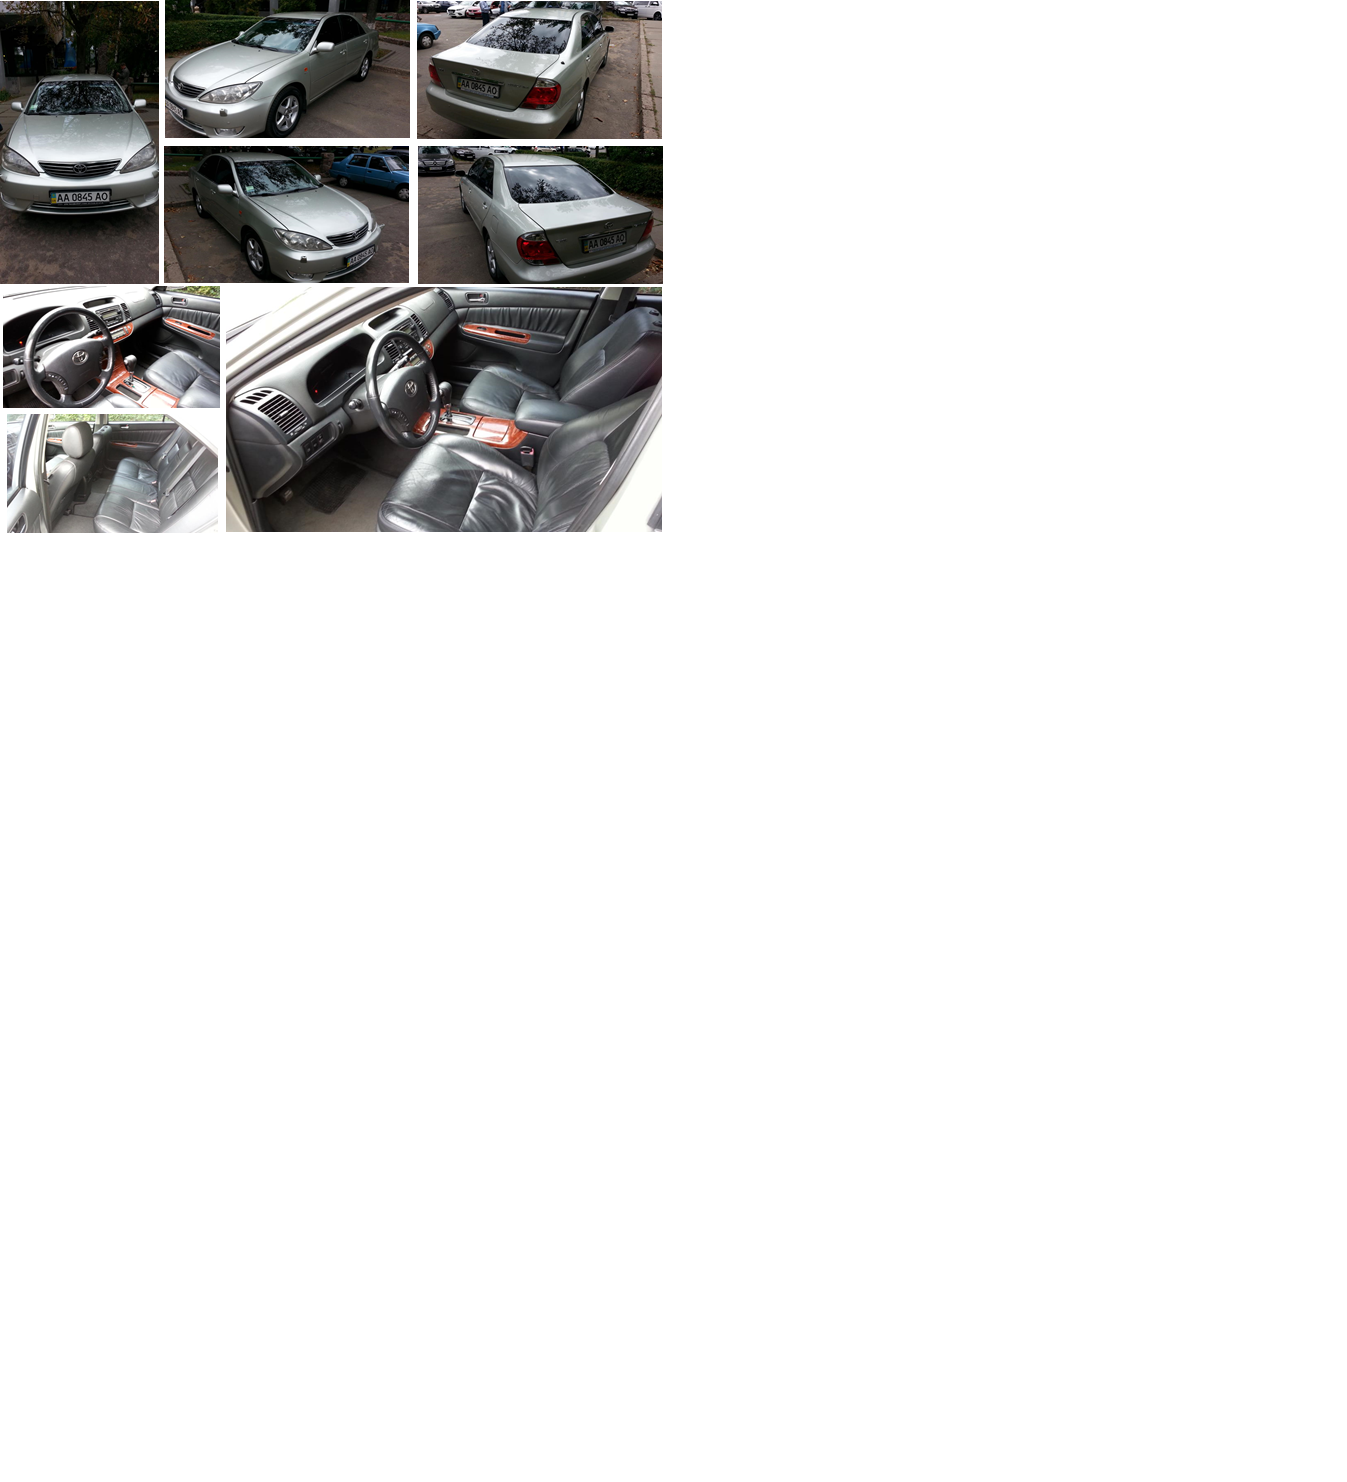 Легковий автомобіль Toyota Camry, 2004 року випуску, двигун 2362 куб. см., номер кузова JTDBE30K900309852, сєдан, номер державної реєстрації  АА 0845 АО та шина 215/60R16 95V EfificientGrip Perfomance GOODYEAR (комплект 4 шт.).